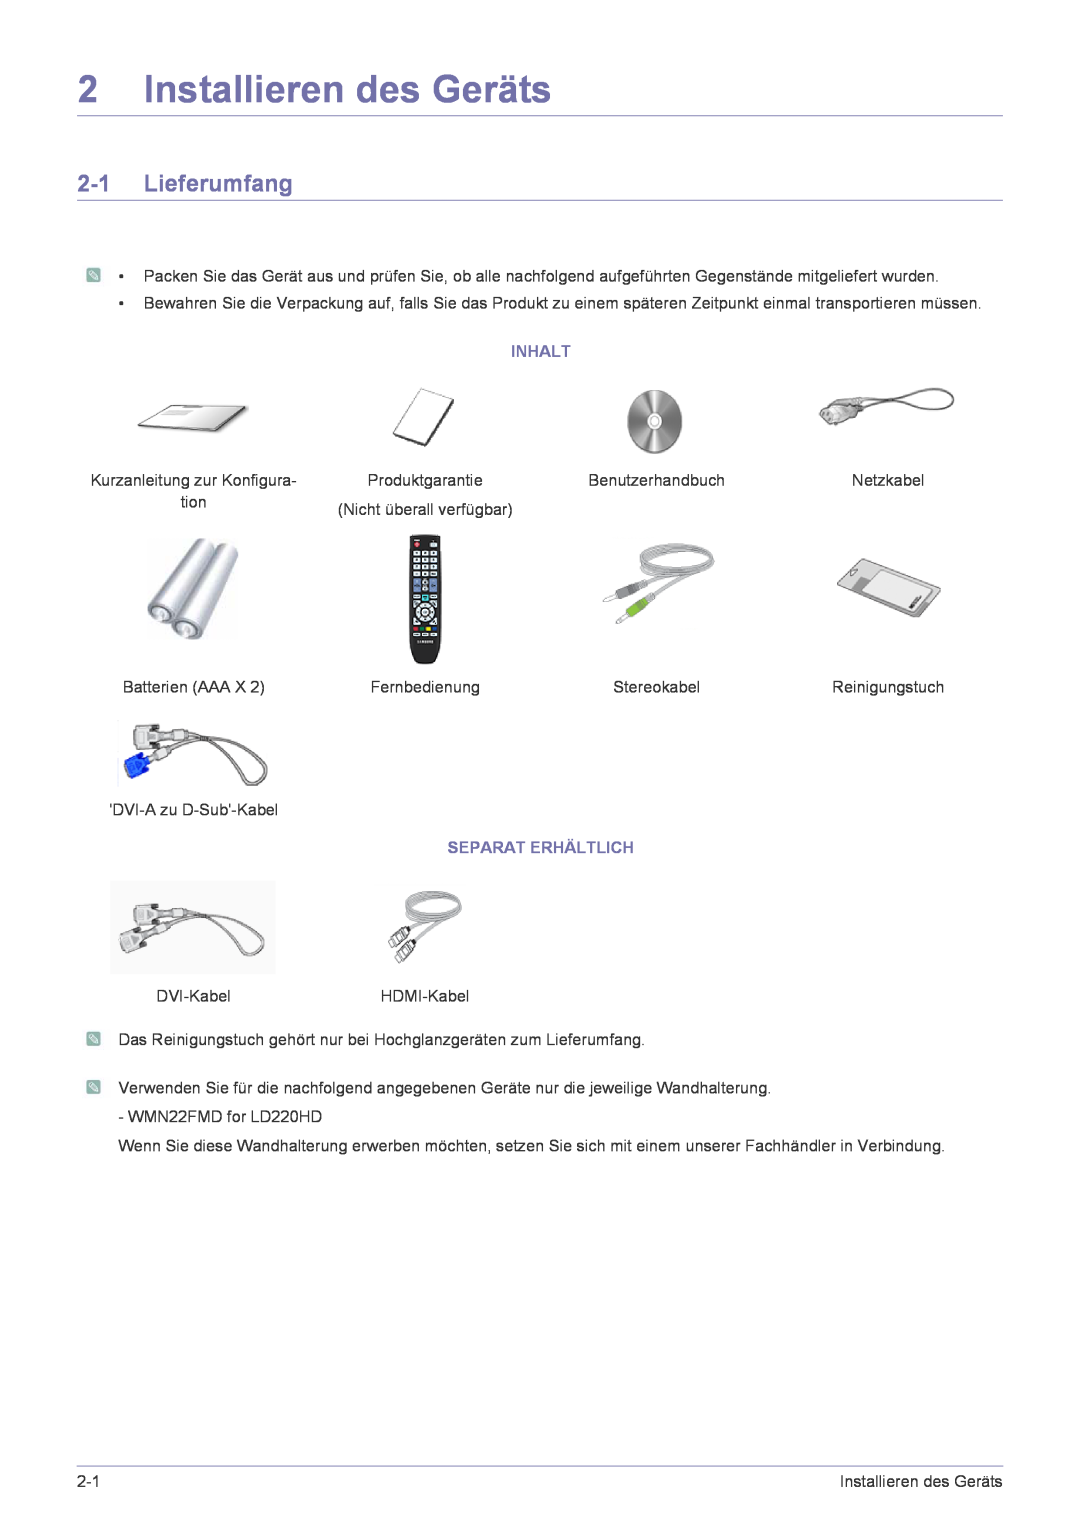 Samsung LS22FMDGF/EN manual Installieren des Geräts, Lieferumfang, Inhalt, Separat Erhältlich 